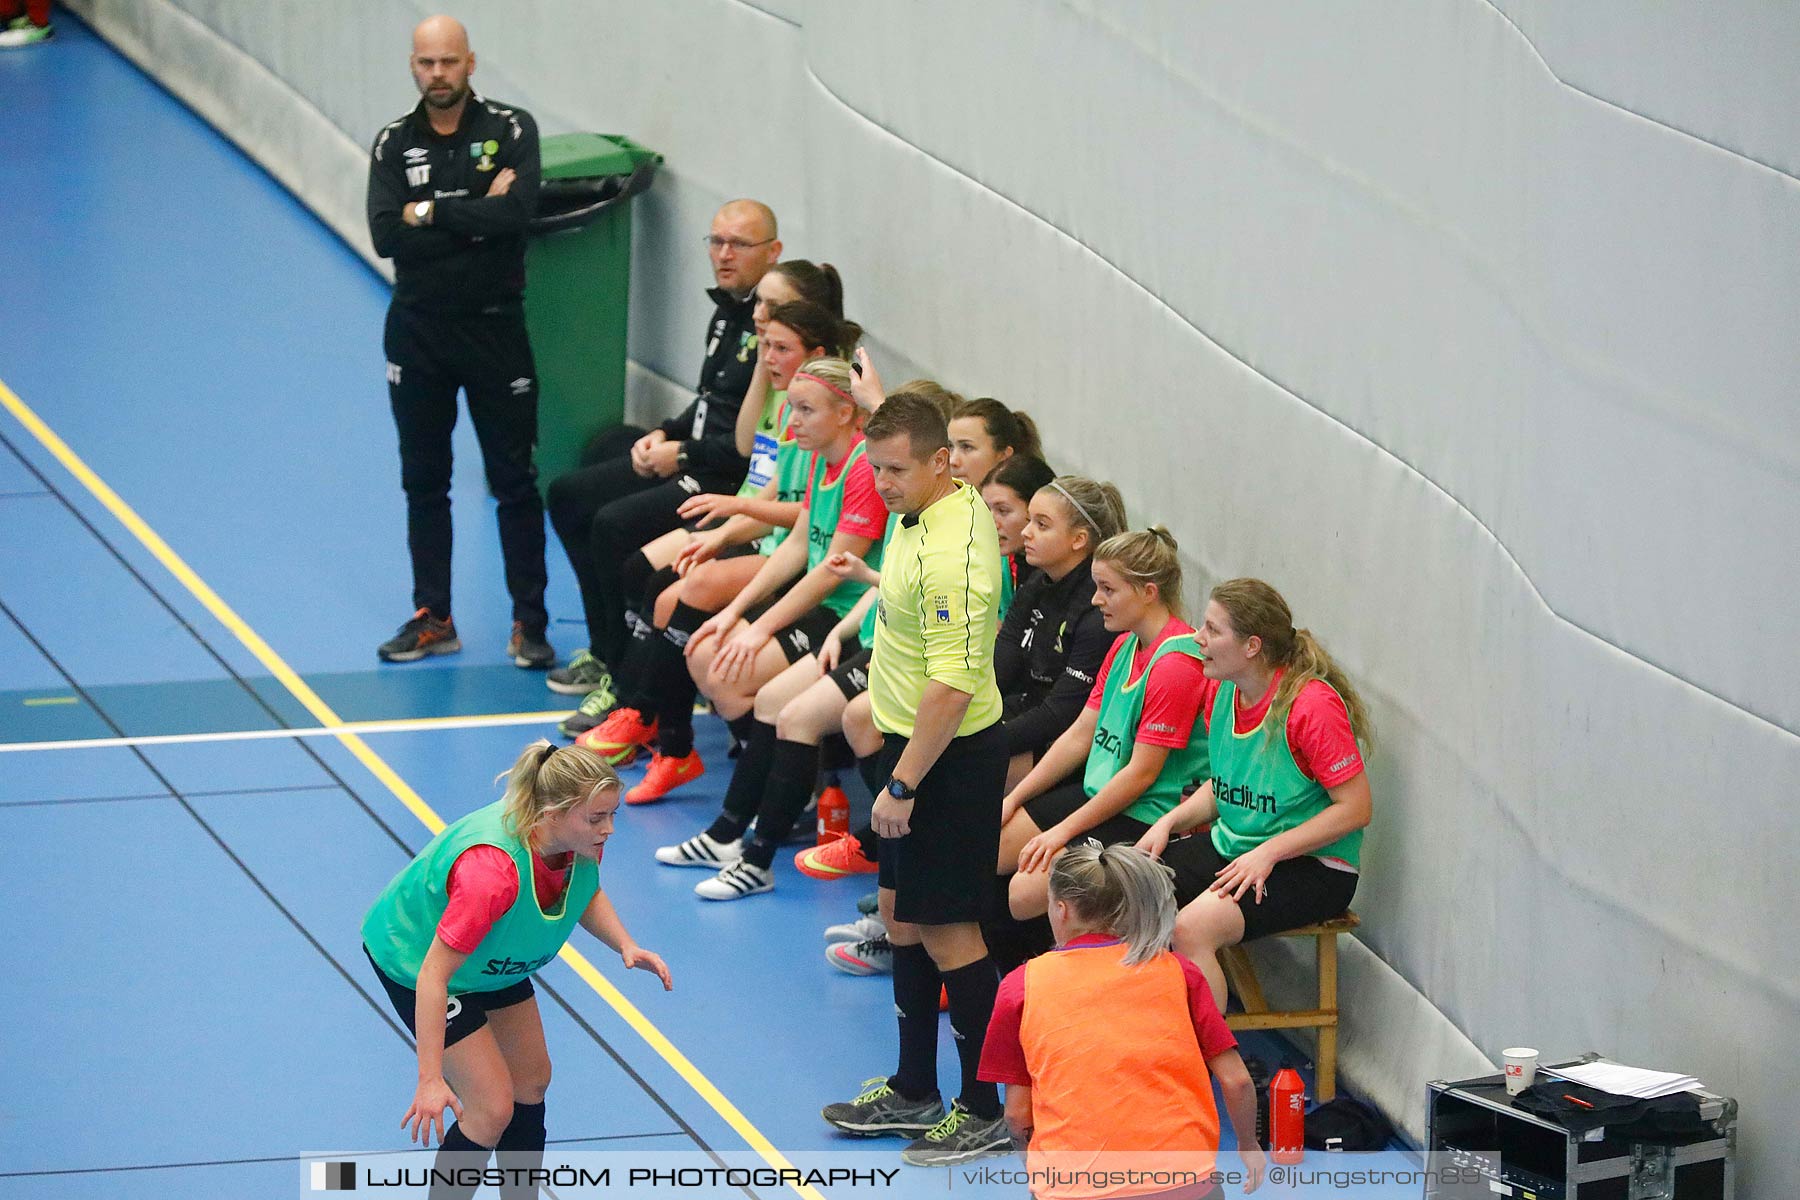 Skövde Futsalcup 2017 Qviding FIF IFK Skövde FK Skövde KIK Falköping FC Våmbs IF,mix,Arena Skövde,Skövde,Sverige,Futsal,,2017,192595